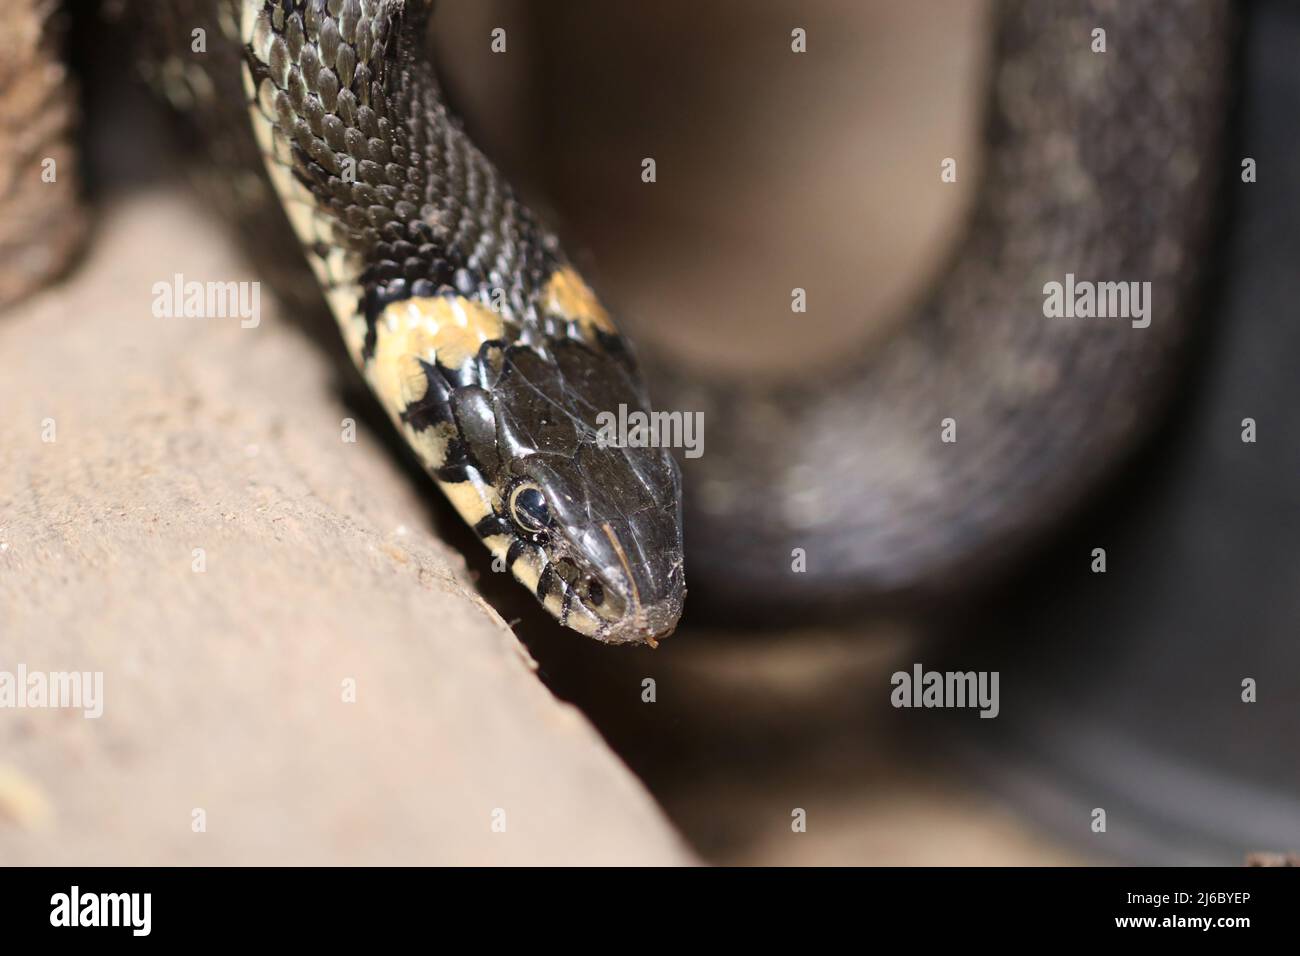 Réveil du serpent à gazon après l'hibernation hivernale. Mise au point sélective. Banque D'Images